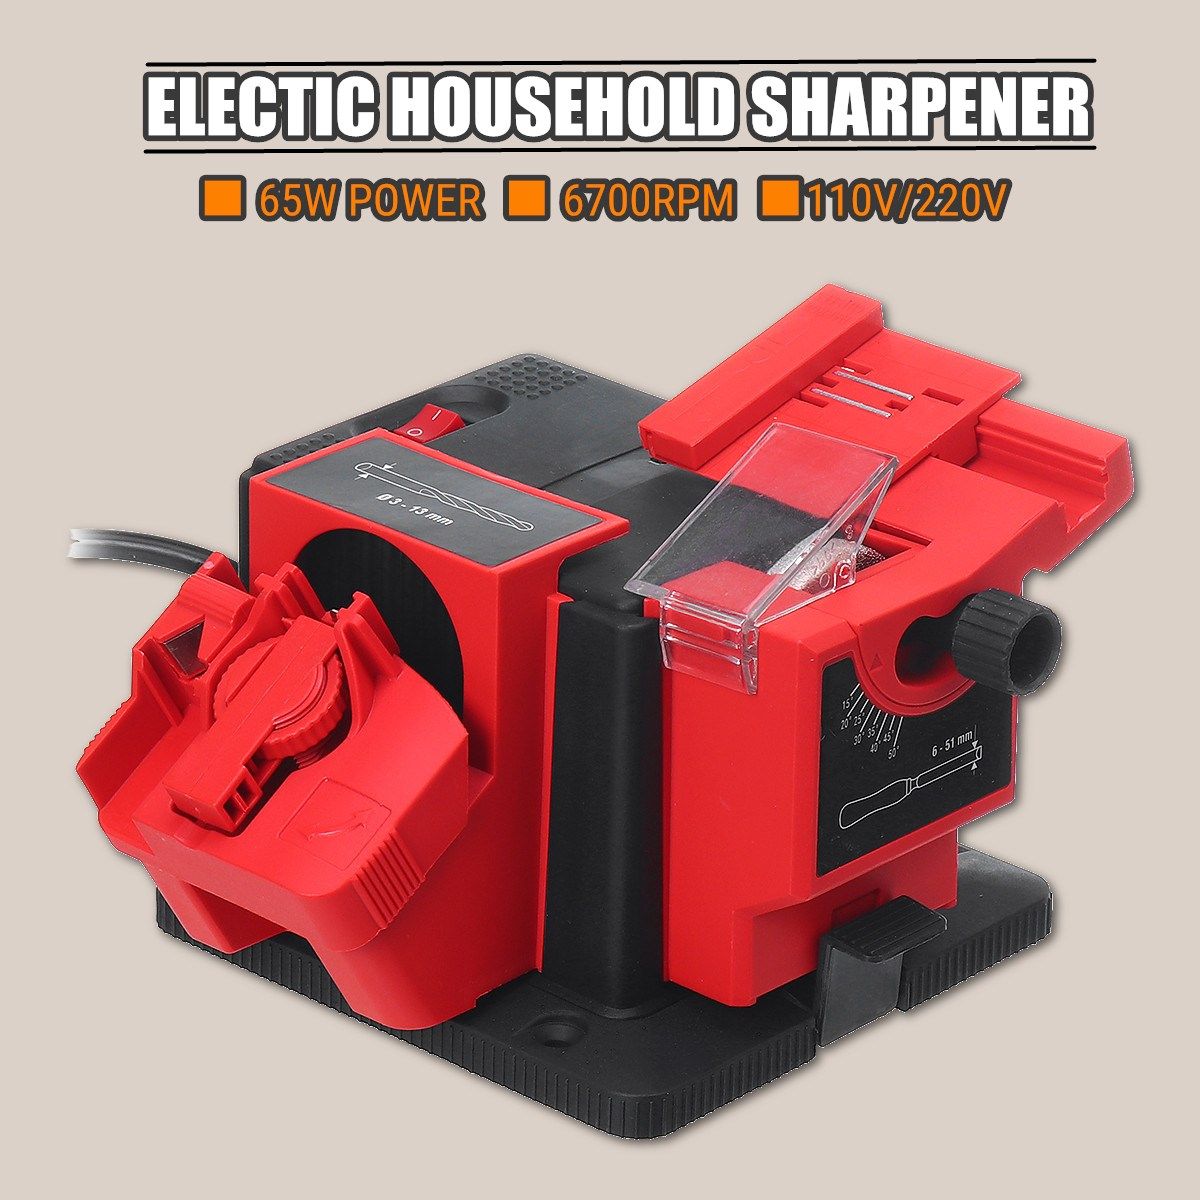 65W-110V220V-Multifunction-Electric-Household-Sharpener-Tool-Drill-Bit-Knifes-Scissor-Grinder-1598210